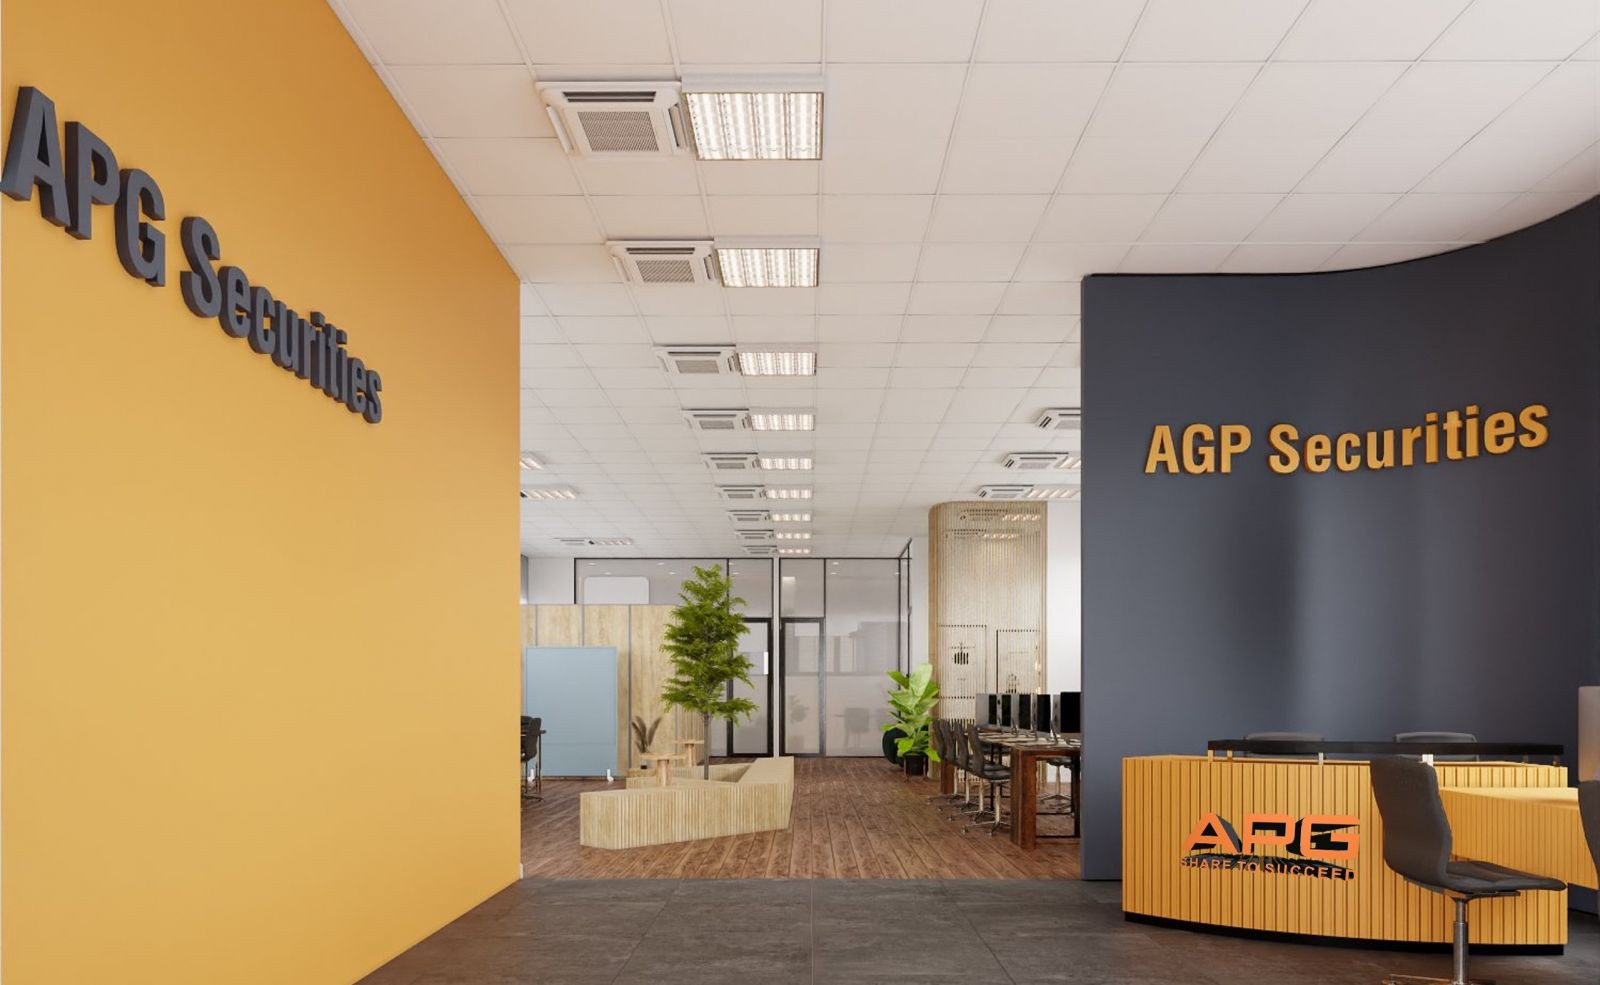 Chứng khoán APG tăng vốn điều lệ lên 1.460 tỷ đồng bằng cách chào bán 73,15 triệu cổ phiếu.